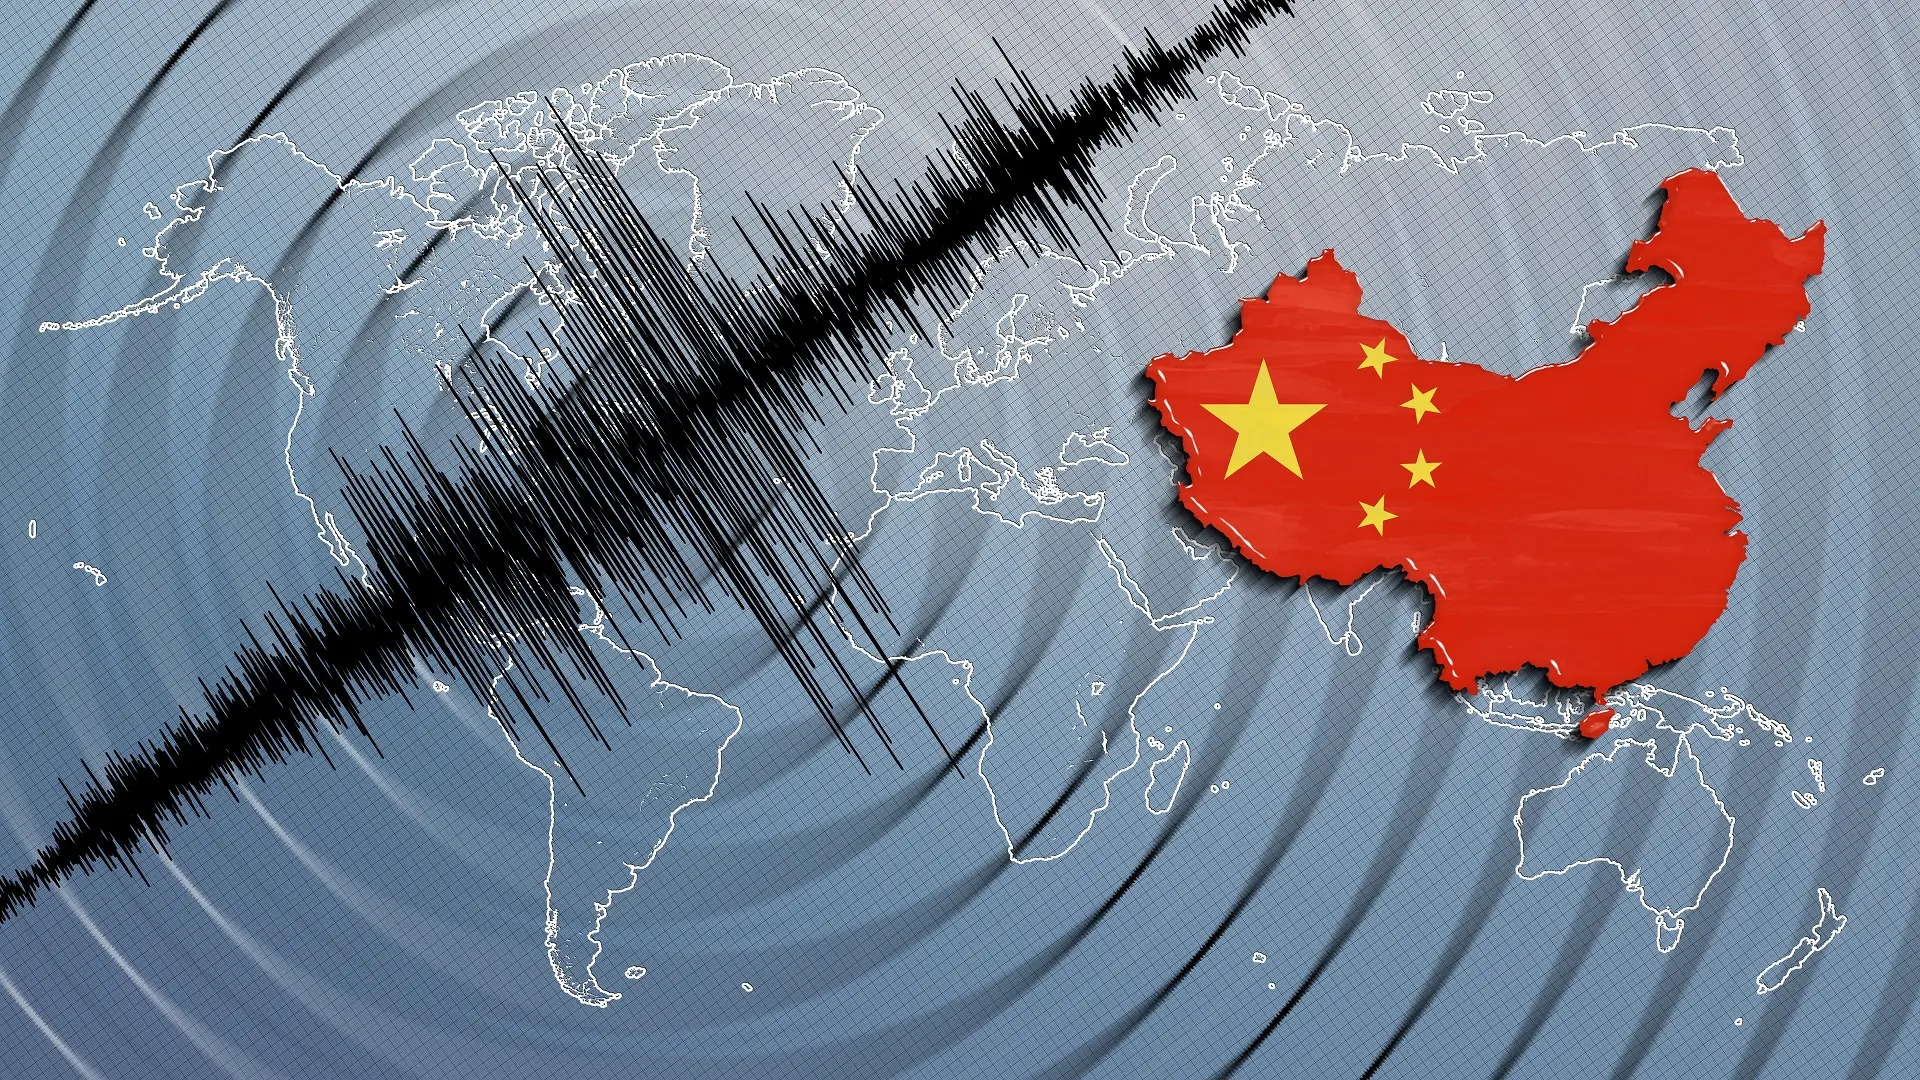 zemljotres u kini, kineski, kineska - shutterstock-664aee41b98f7.webp